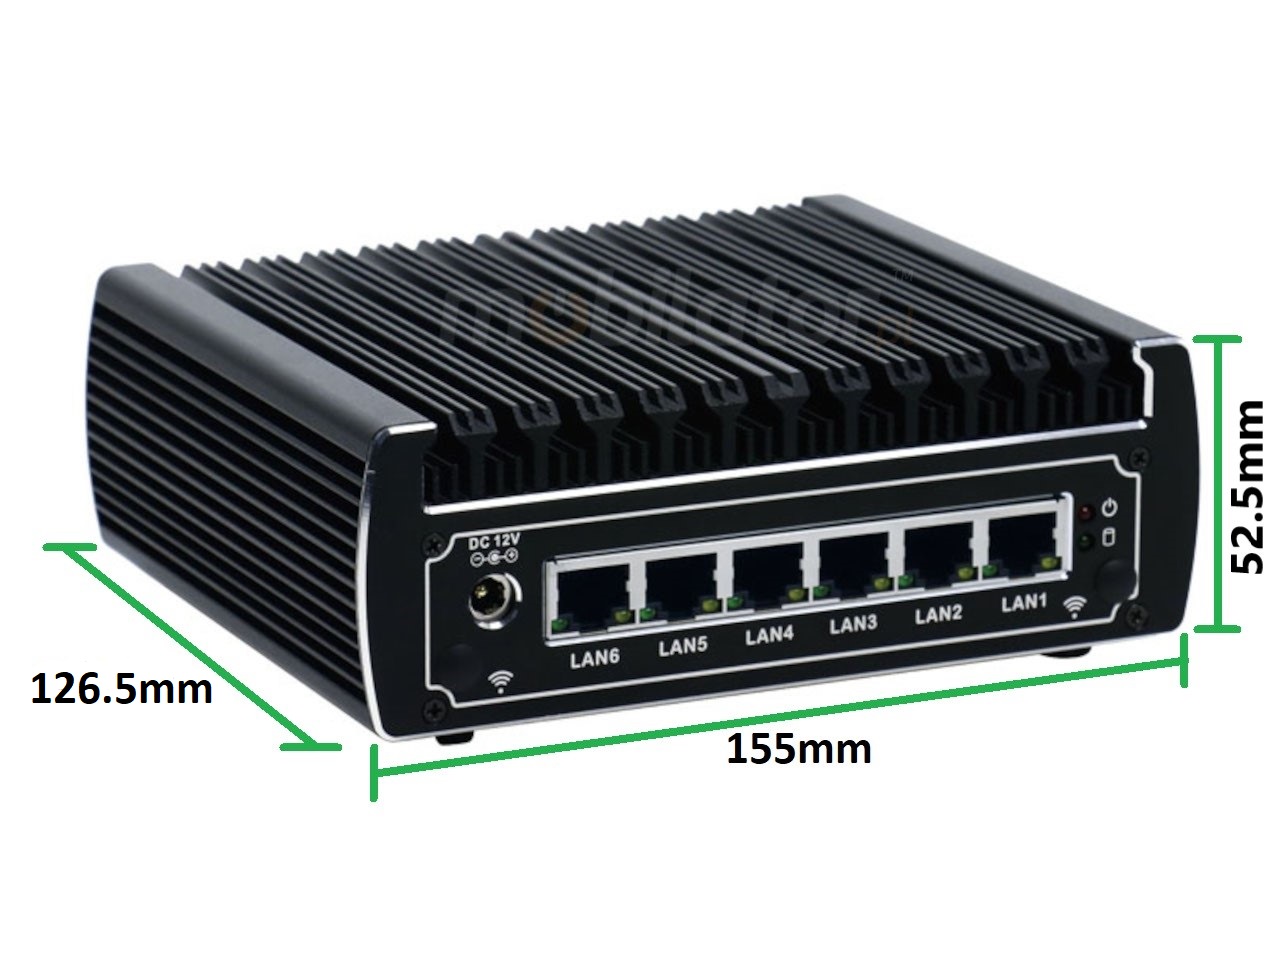   IBOX N133 v.11, wymiary SSD DDR4 , przemysowy, may, szybki, niezawodny, fanless, industrial, small, LAN, INTEL i3